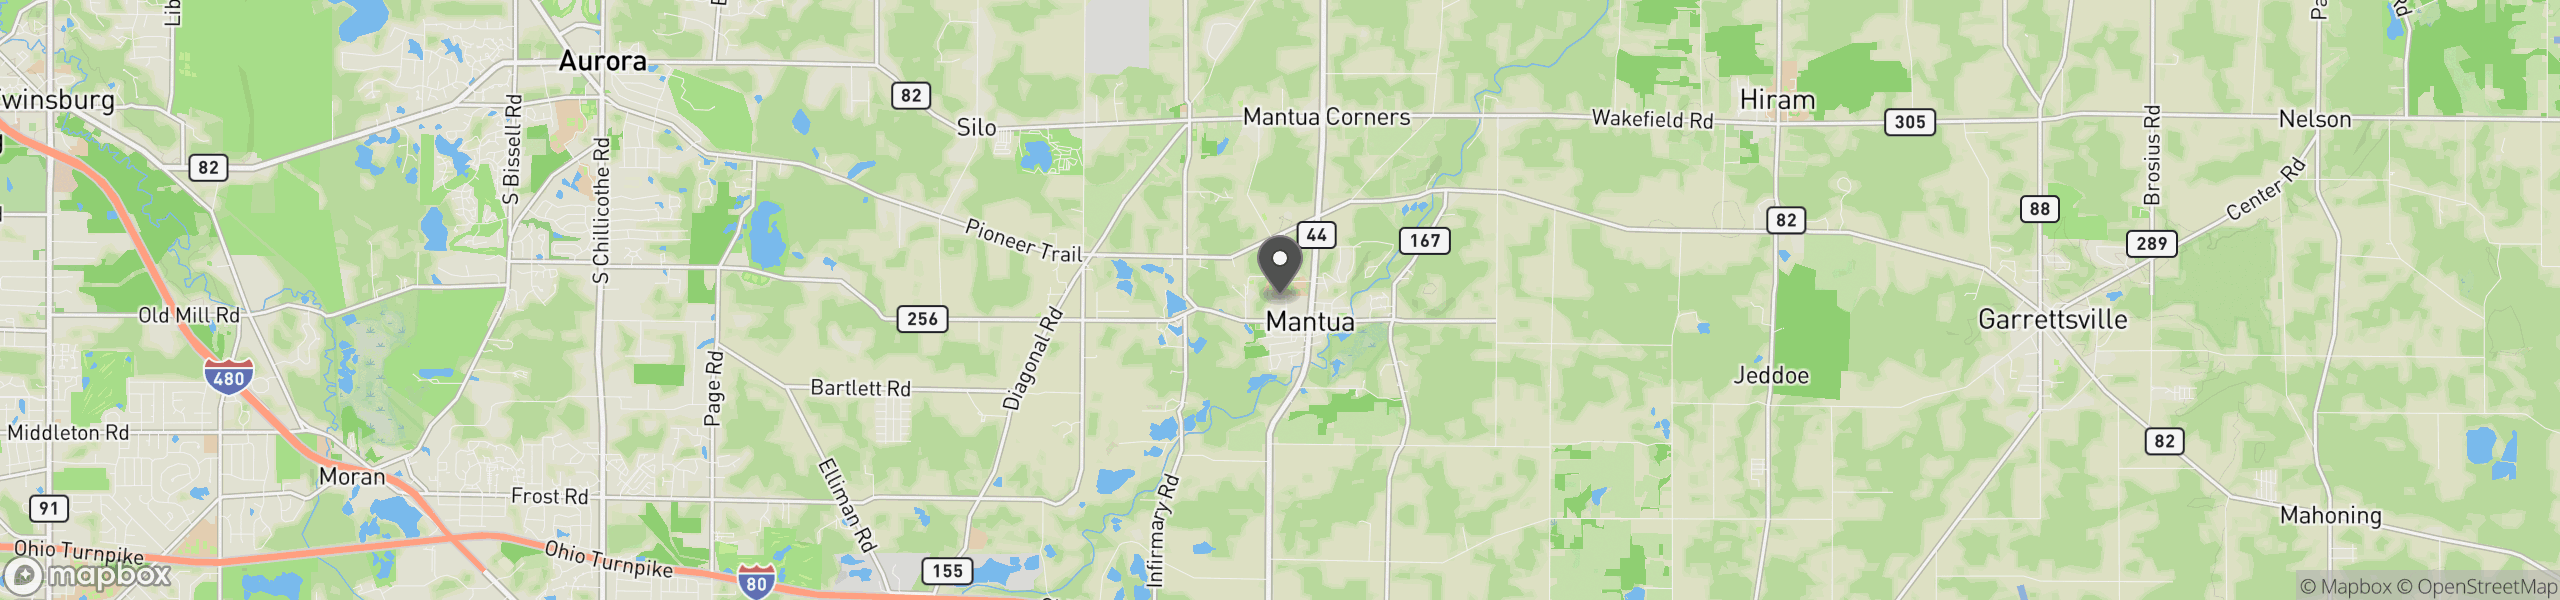 Mantua, OH